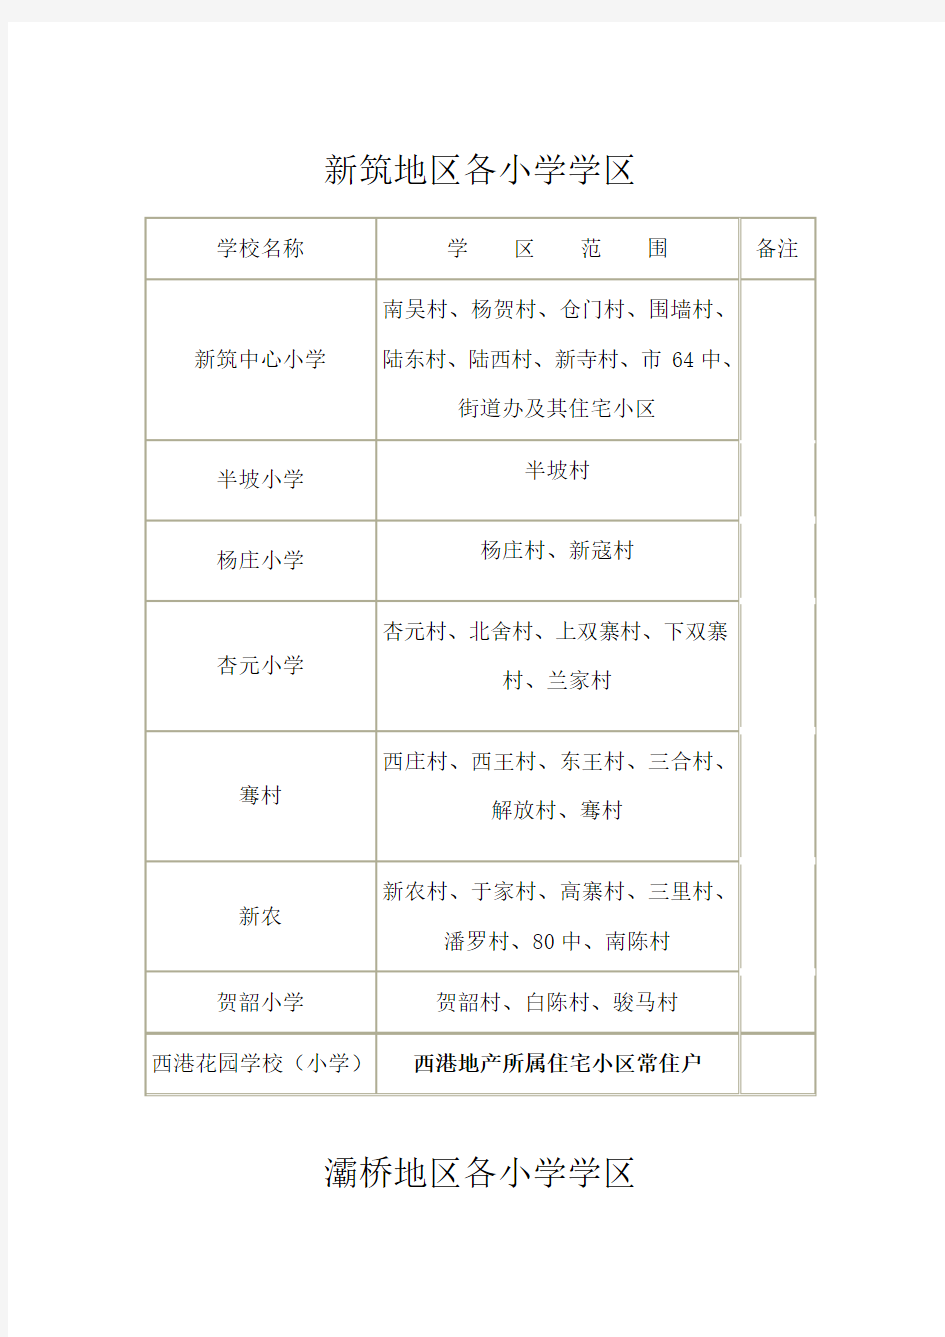 西安灞桥小学学区划分一览表(Word)